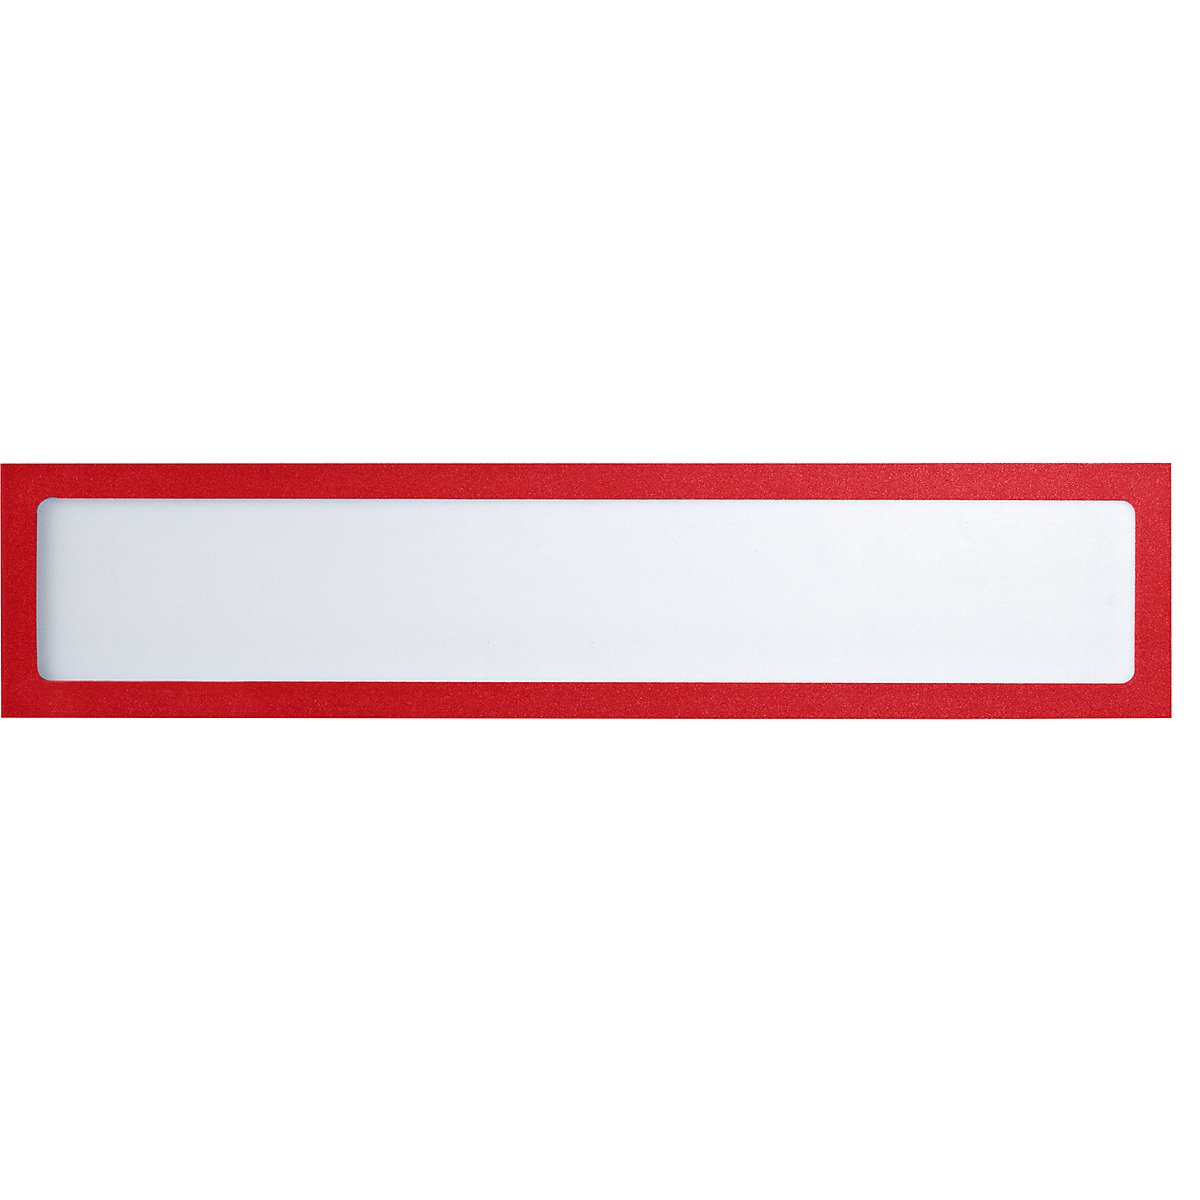 Magnetni informacijski džep – eurokraft basic, za natpise, DIN A4 poprečno / DIN A3 uspravno, 312 x 60 mm, okvir u crvenoj boji, pak. 10 kom.-5